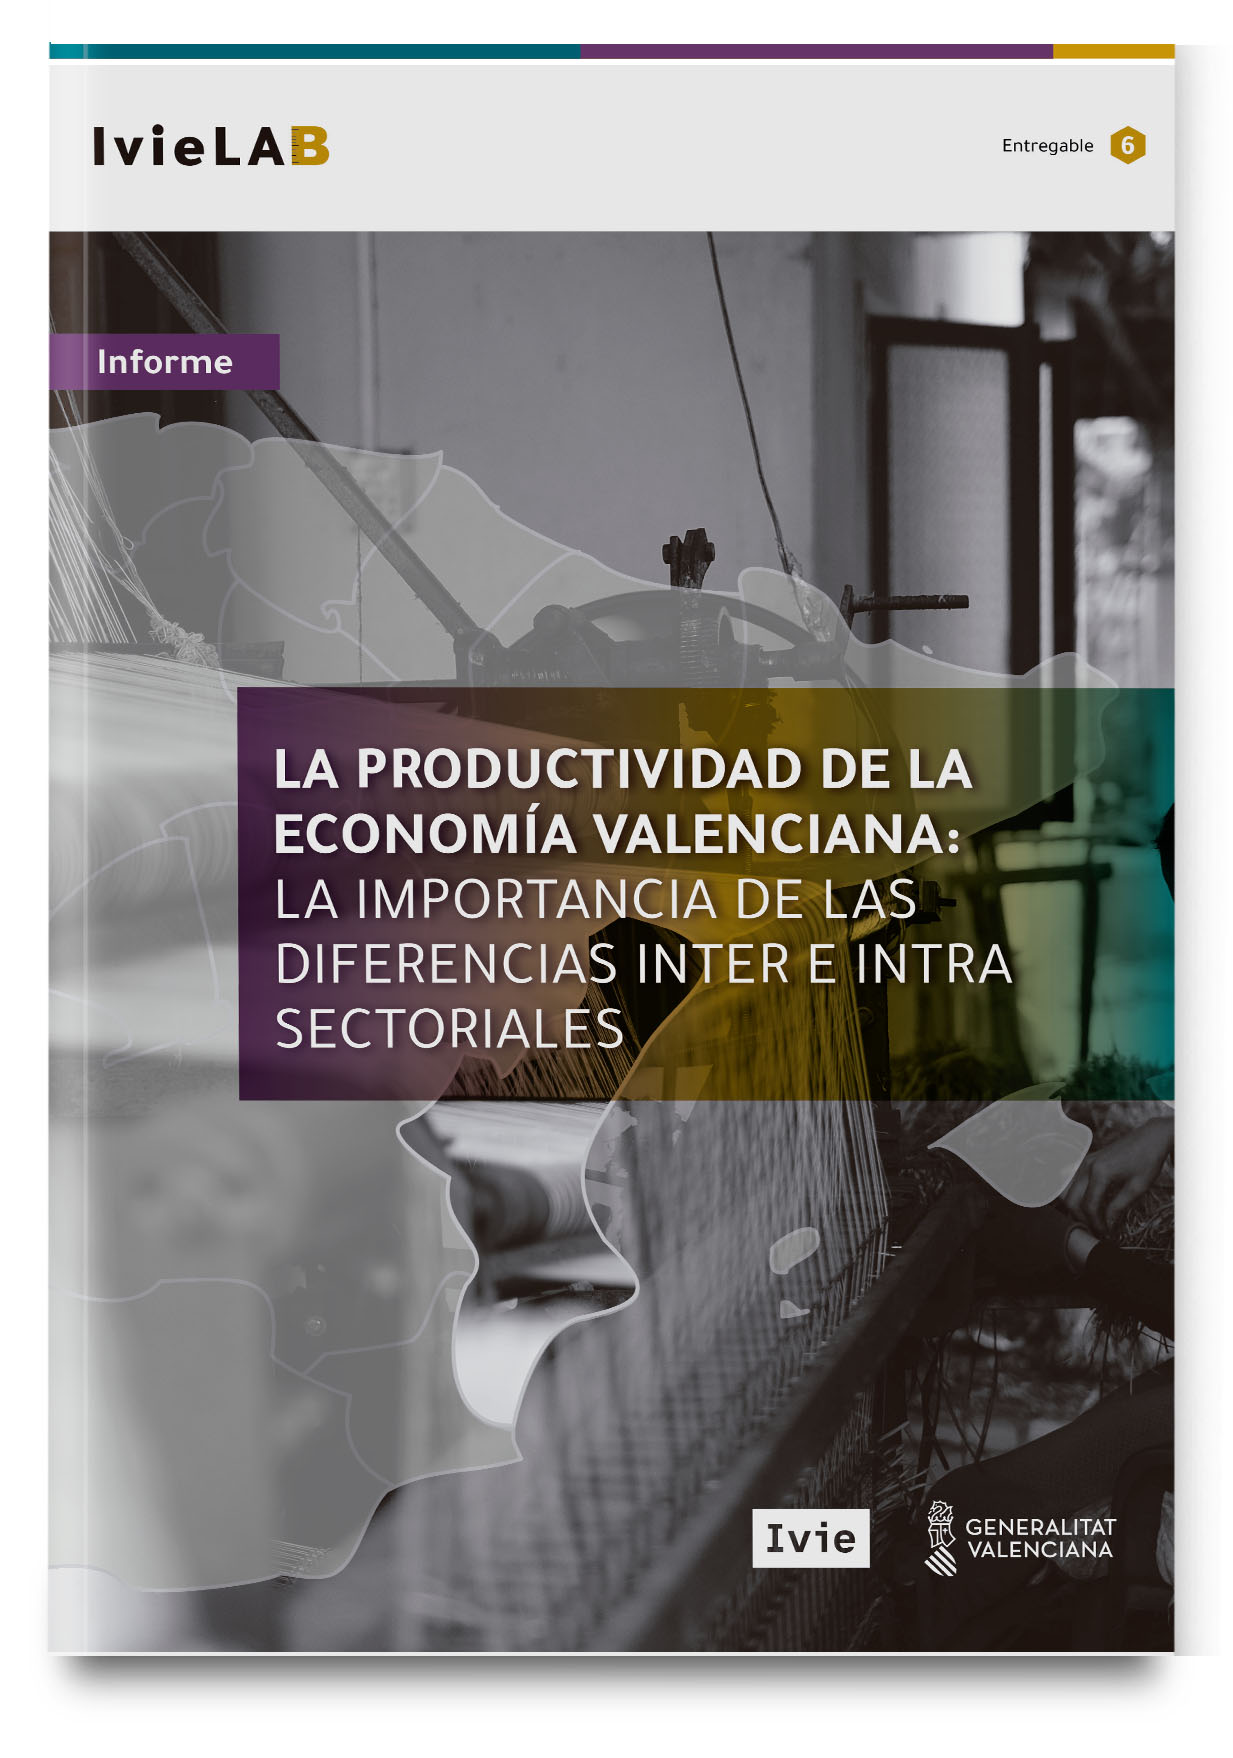 IvieLAB. La productividad de la economía valenciana: la importancia de las diferencias inter e intra sectoriales